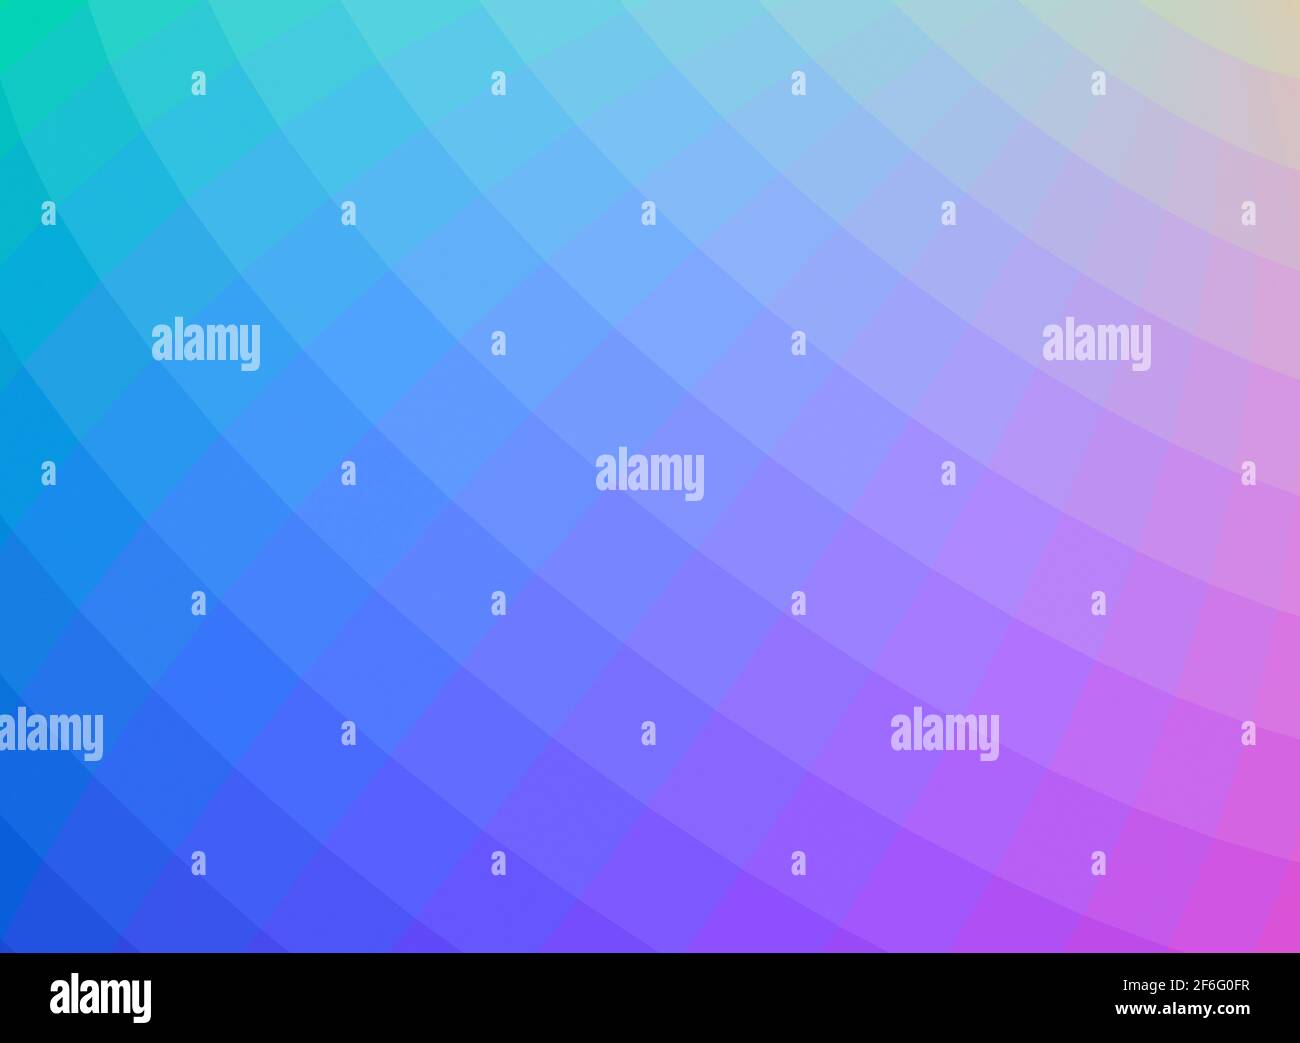 Abstrakter digitaler Grafikhintergrund mit farbigem Farbverlaufsgitter, 3d-Rendering-Illustration Stockfoto